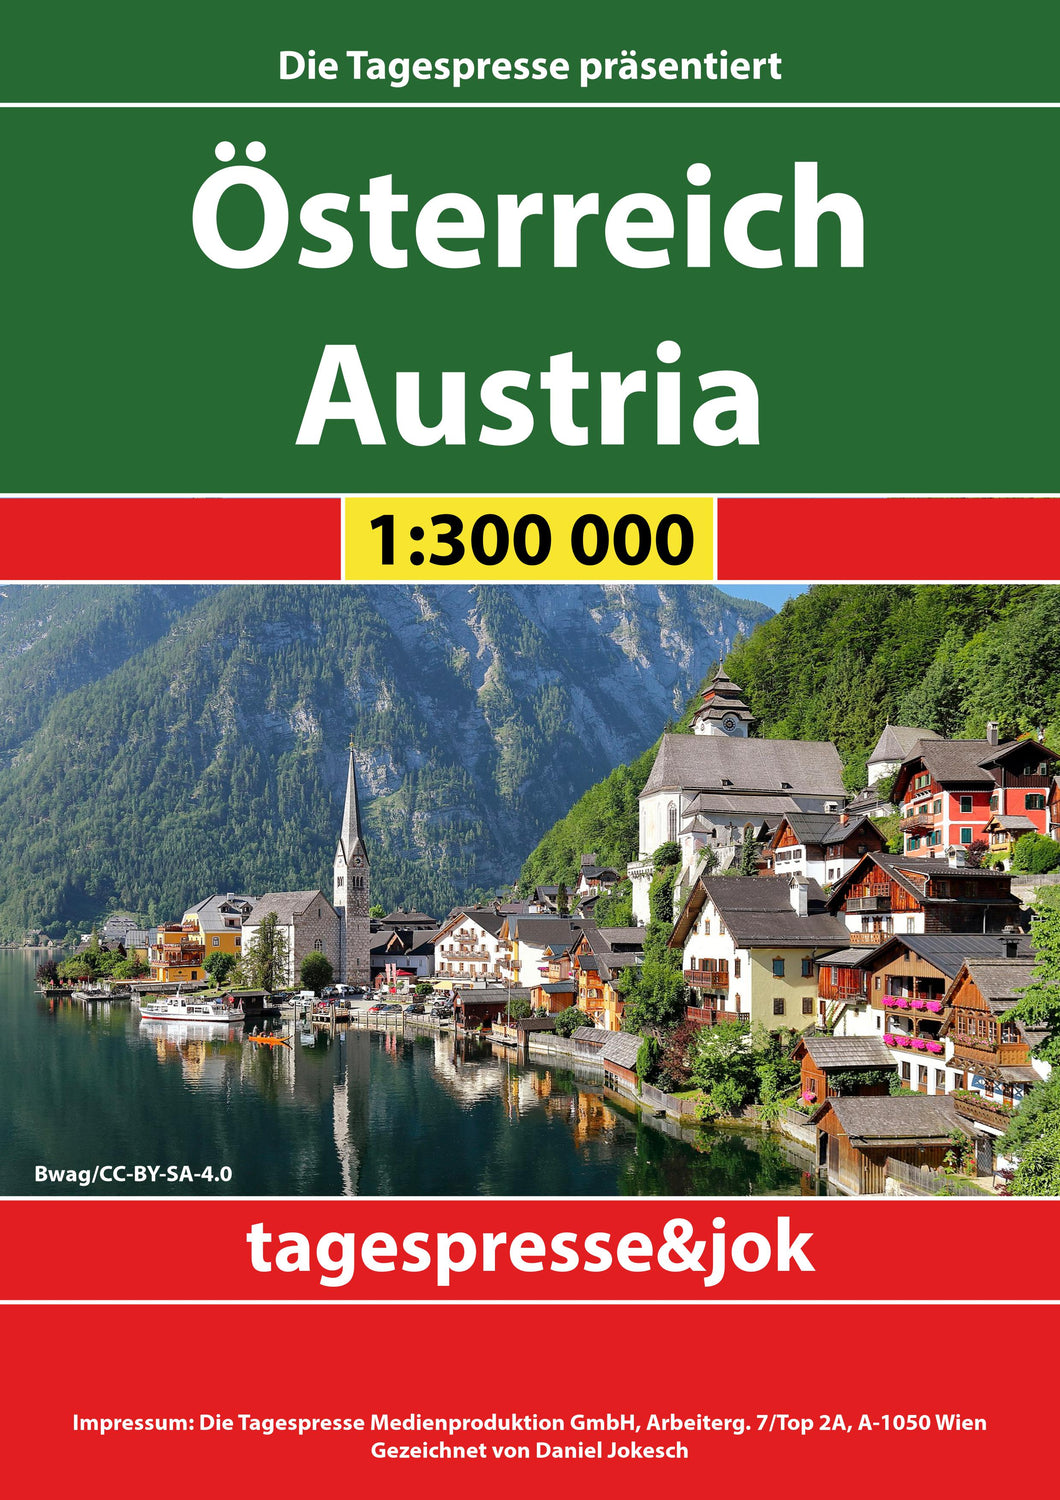 Österreich-Karte von tagespresse&jok